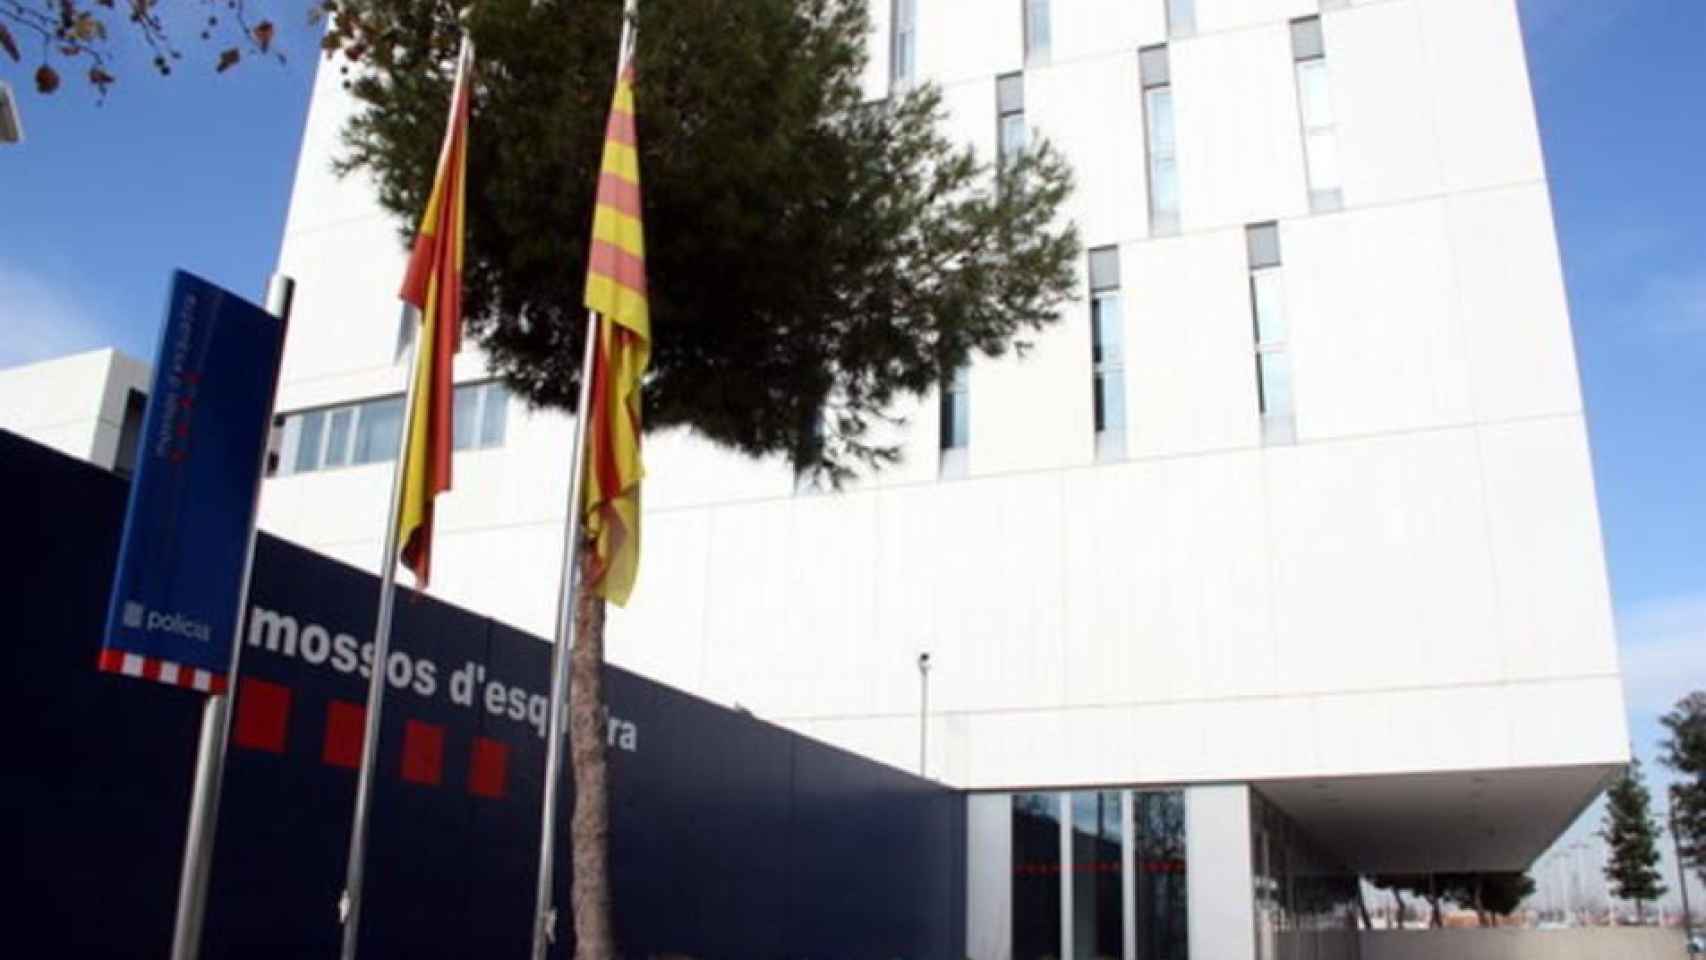 Comisaría de Mossos d'Esquadra en Tarragona